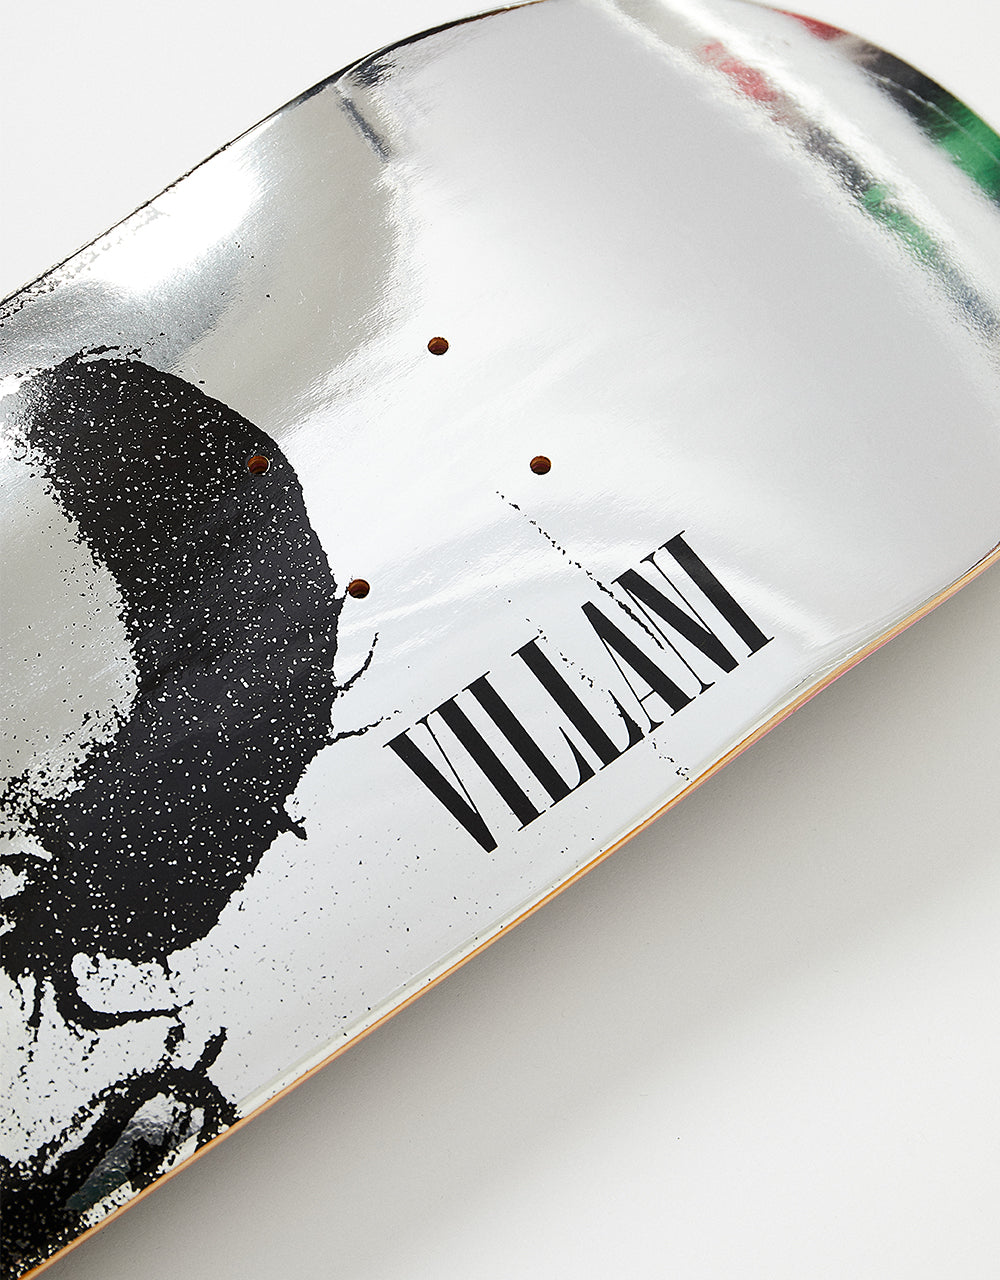 Primitive x Halloween Villani Skateboard Deck - 8.25"